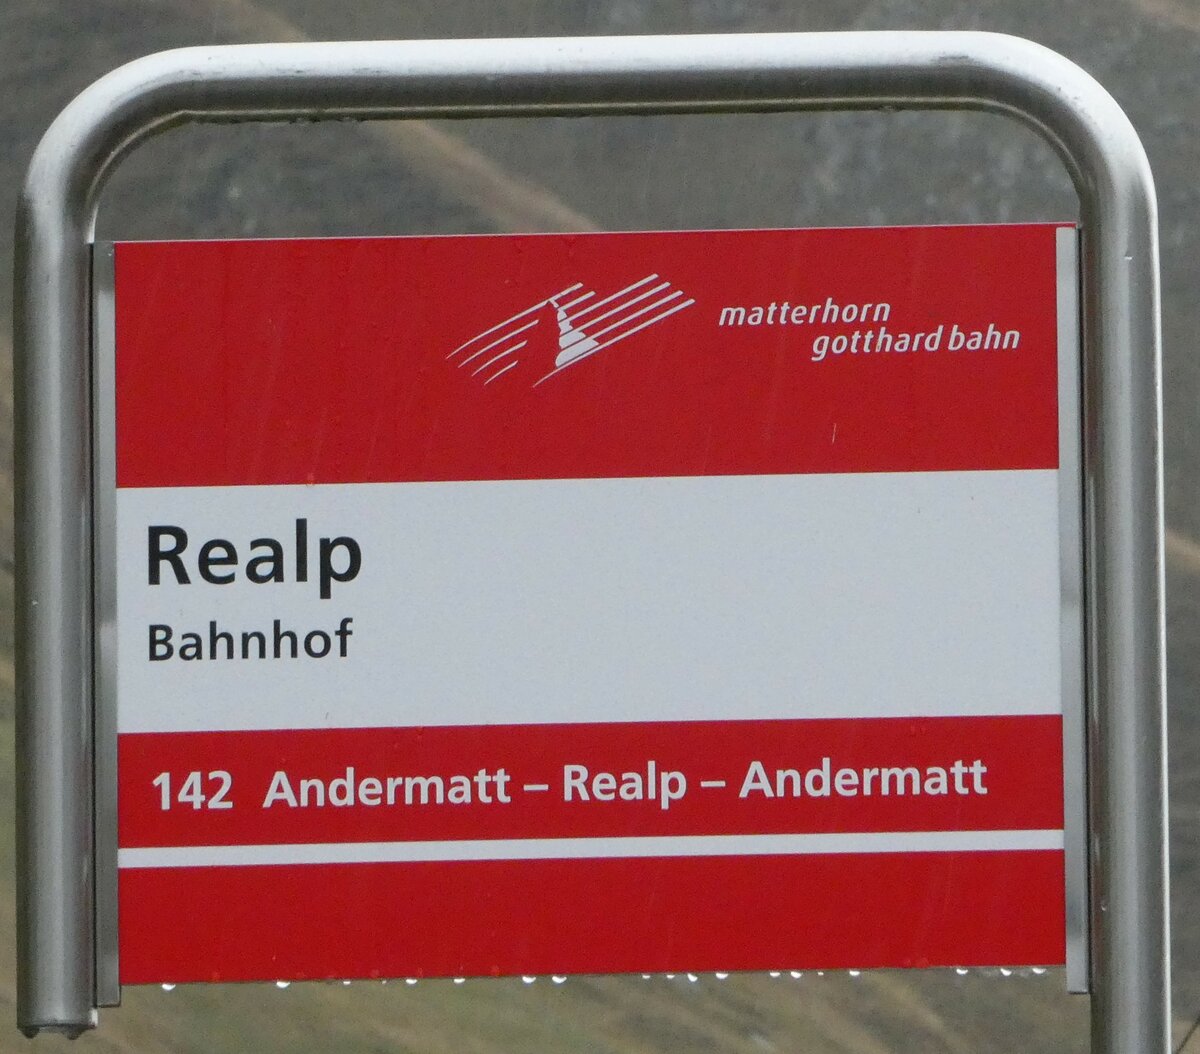 (240'325) matterhorn gotthard bahn-Haltestellenschild - Realp, Bahnhof - am 25. September 2022